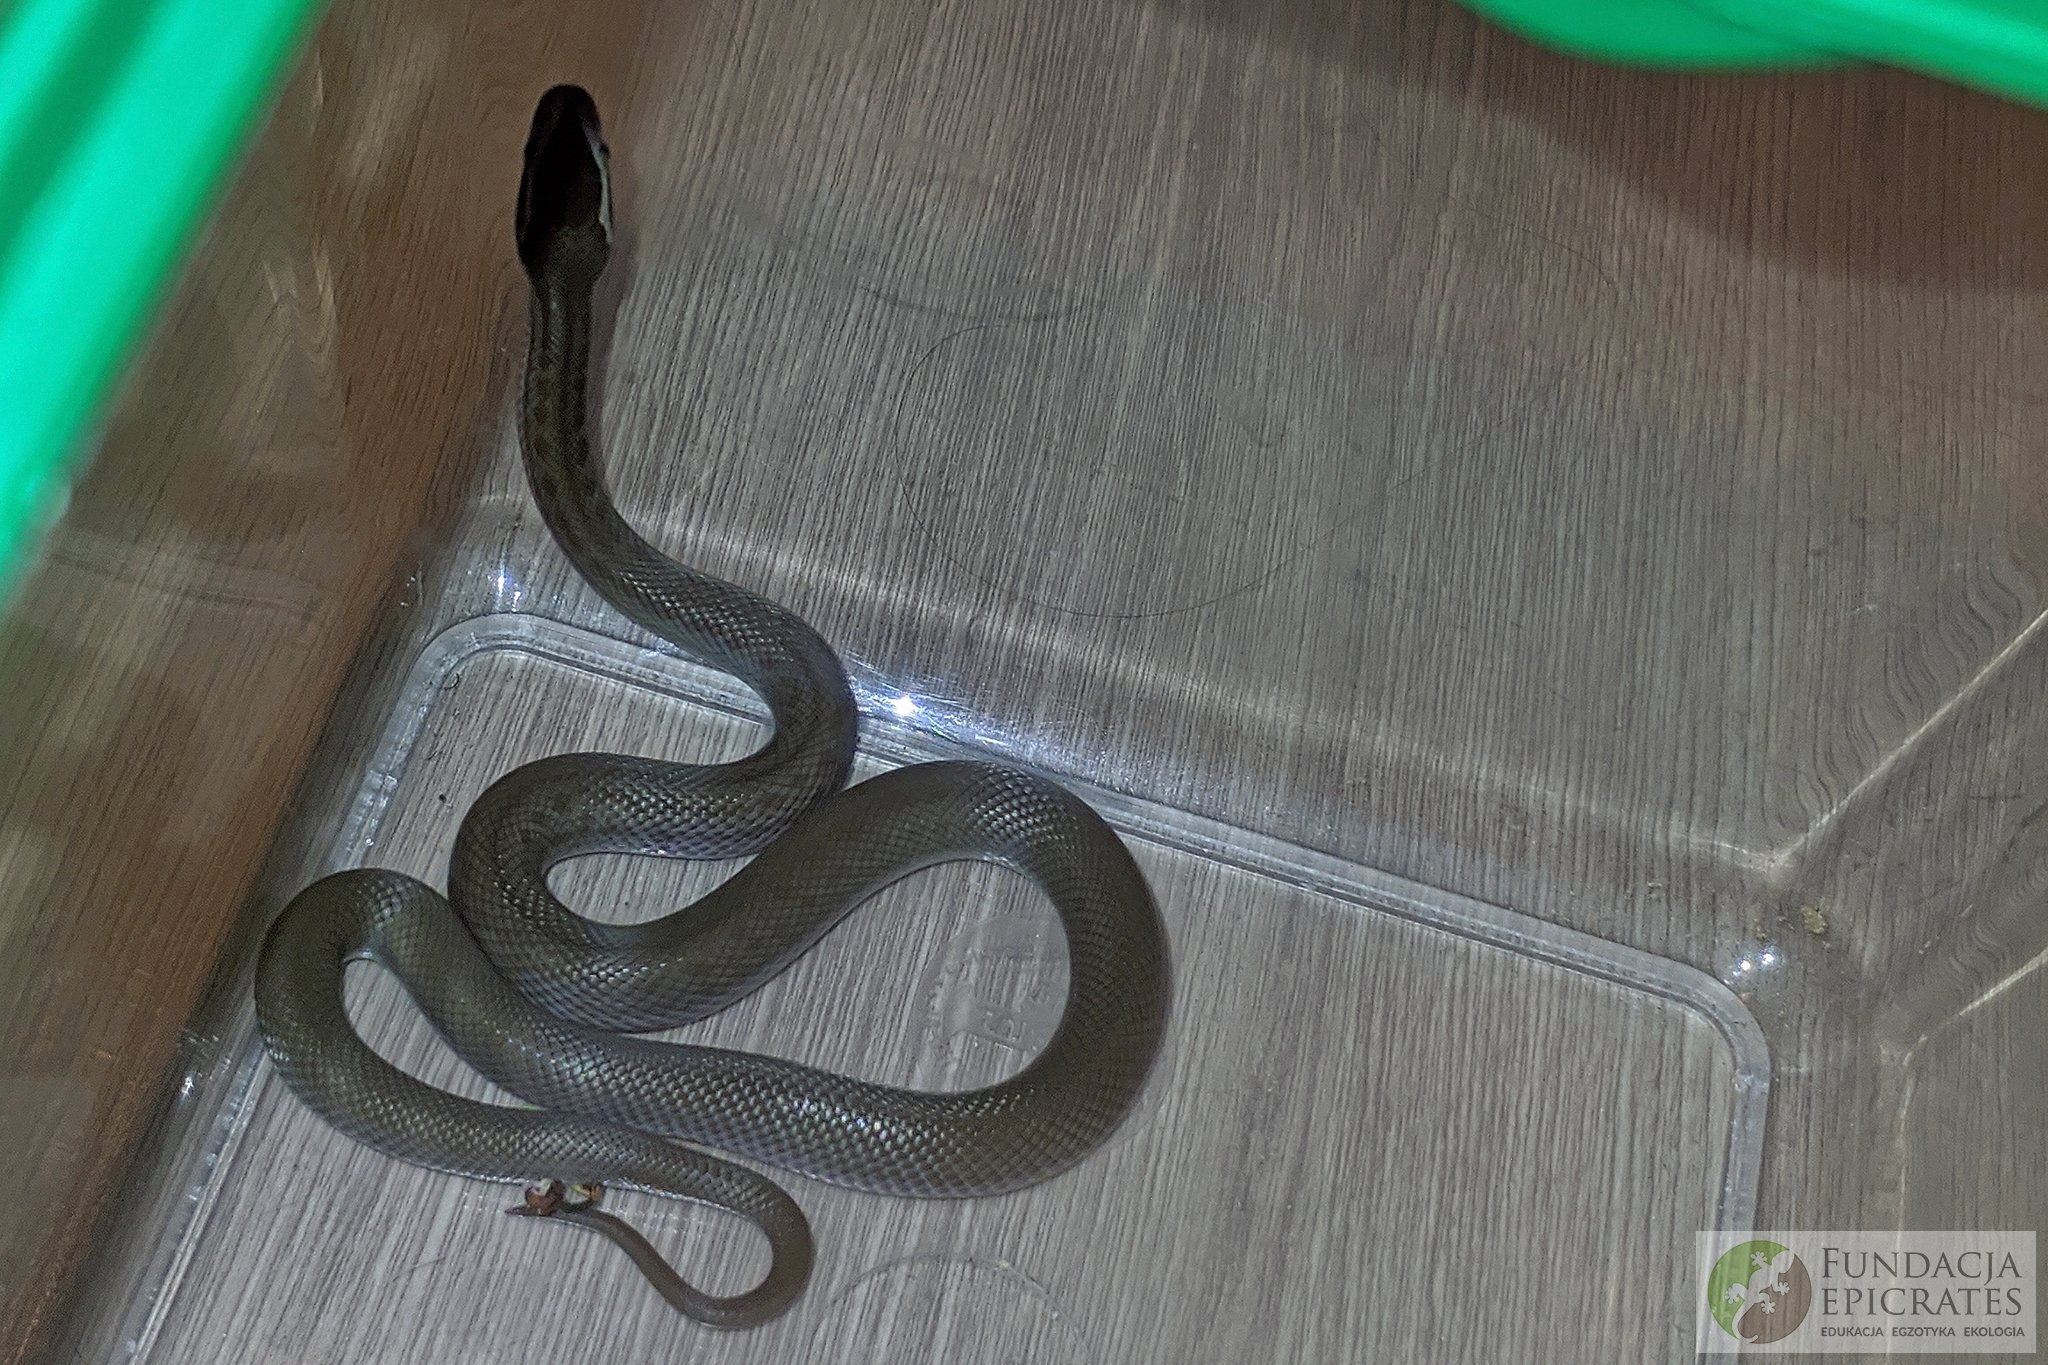 Na plecy mężczyzny znajdującego się w toalecie spadł wąż. Trwa ustalanie do kogo należy zwierzę (zdjęcia)